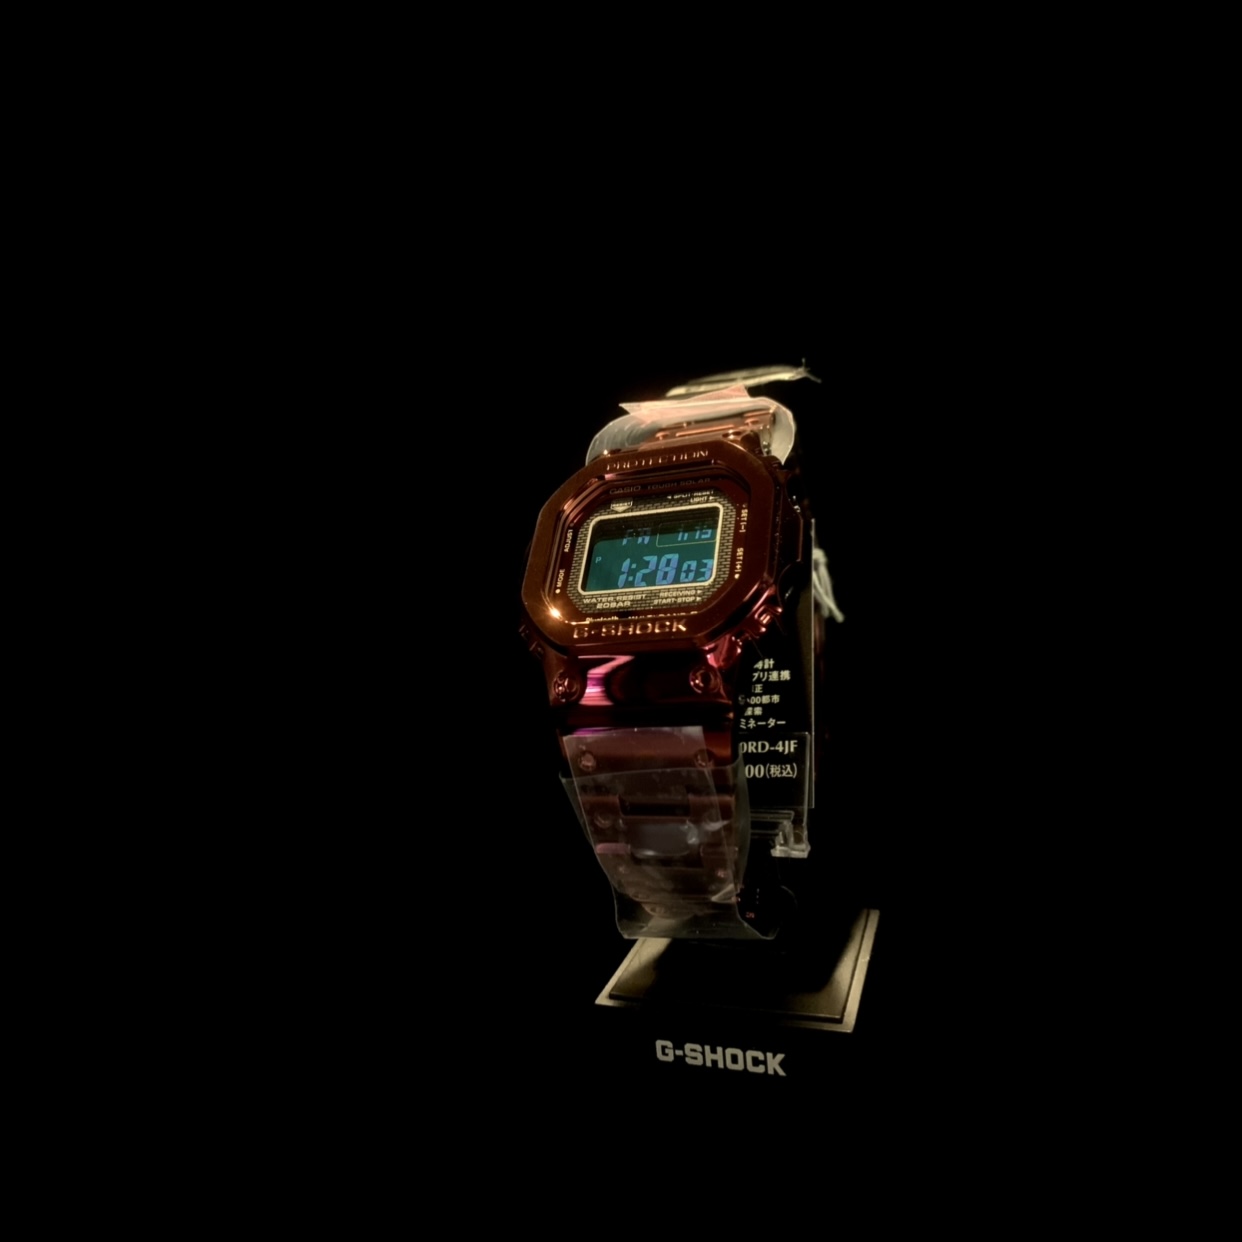 ジーショック G Shock Gmw B5000rd 4jf Wing 香林坊店 ブランド腕時計の正規販売店紹介サイトgressive グレッシブ